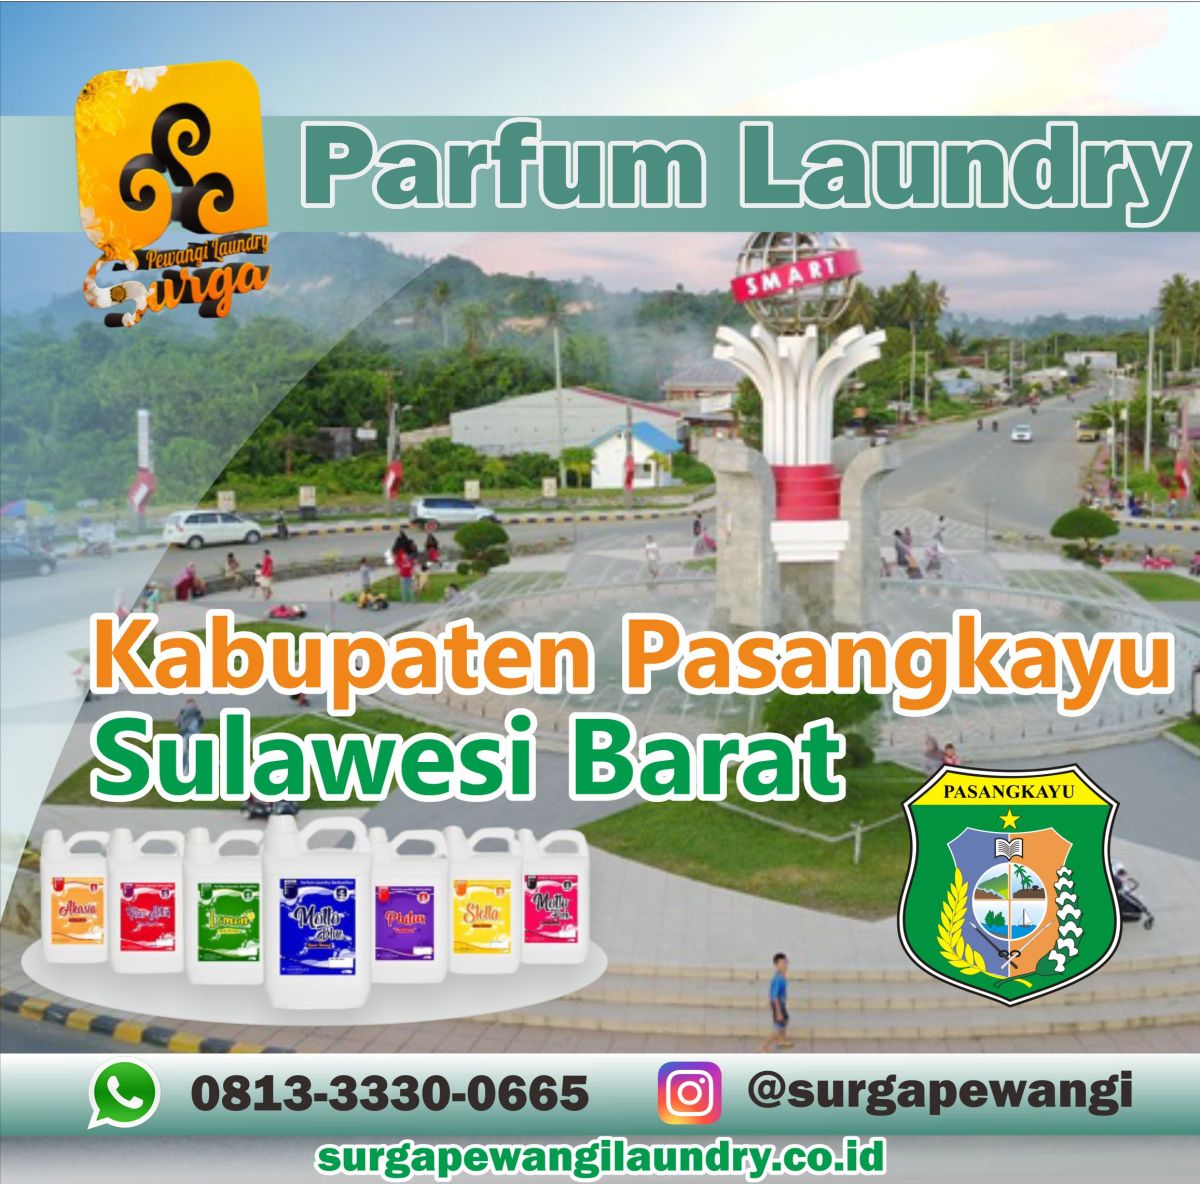 Parfum Laundry Kabupaten Pasangkayu, Sulawesi Barat